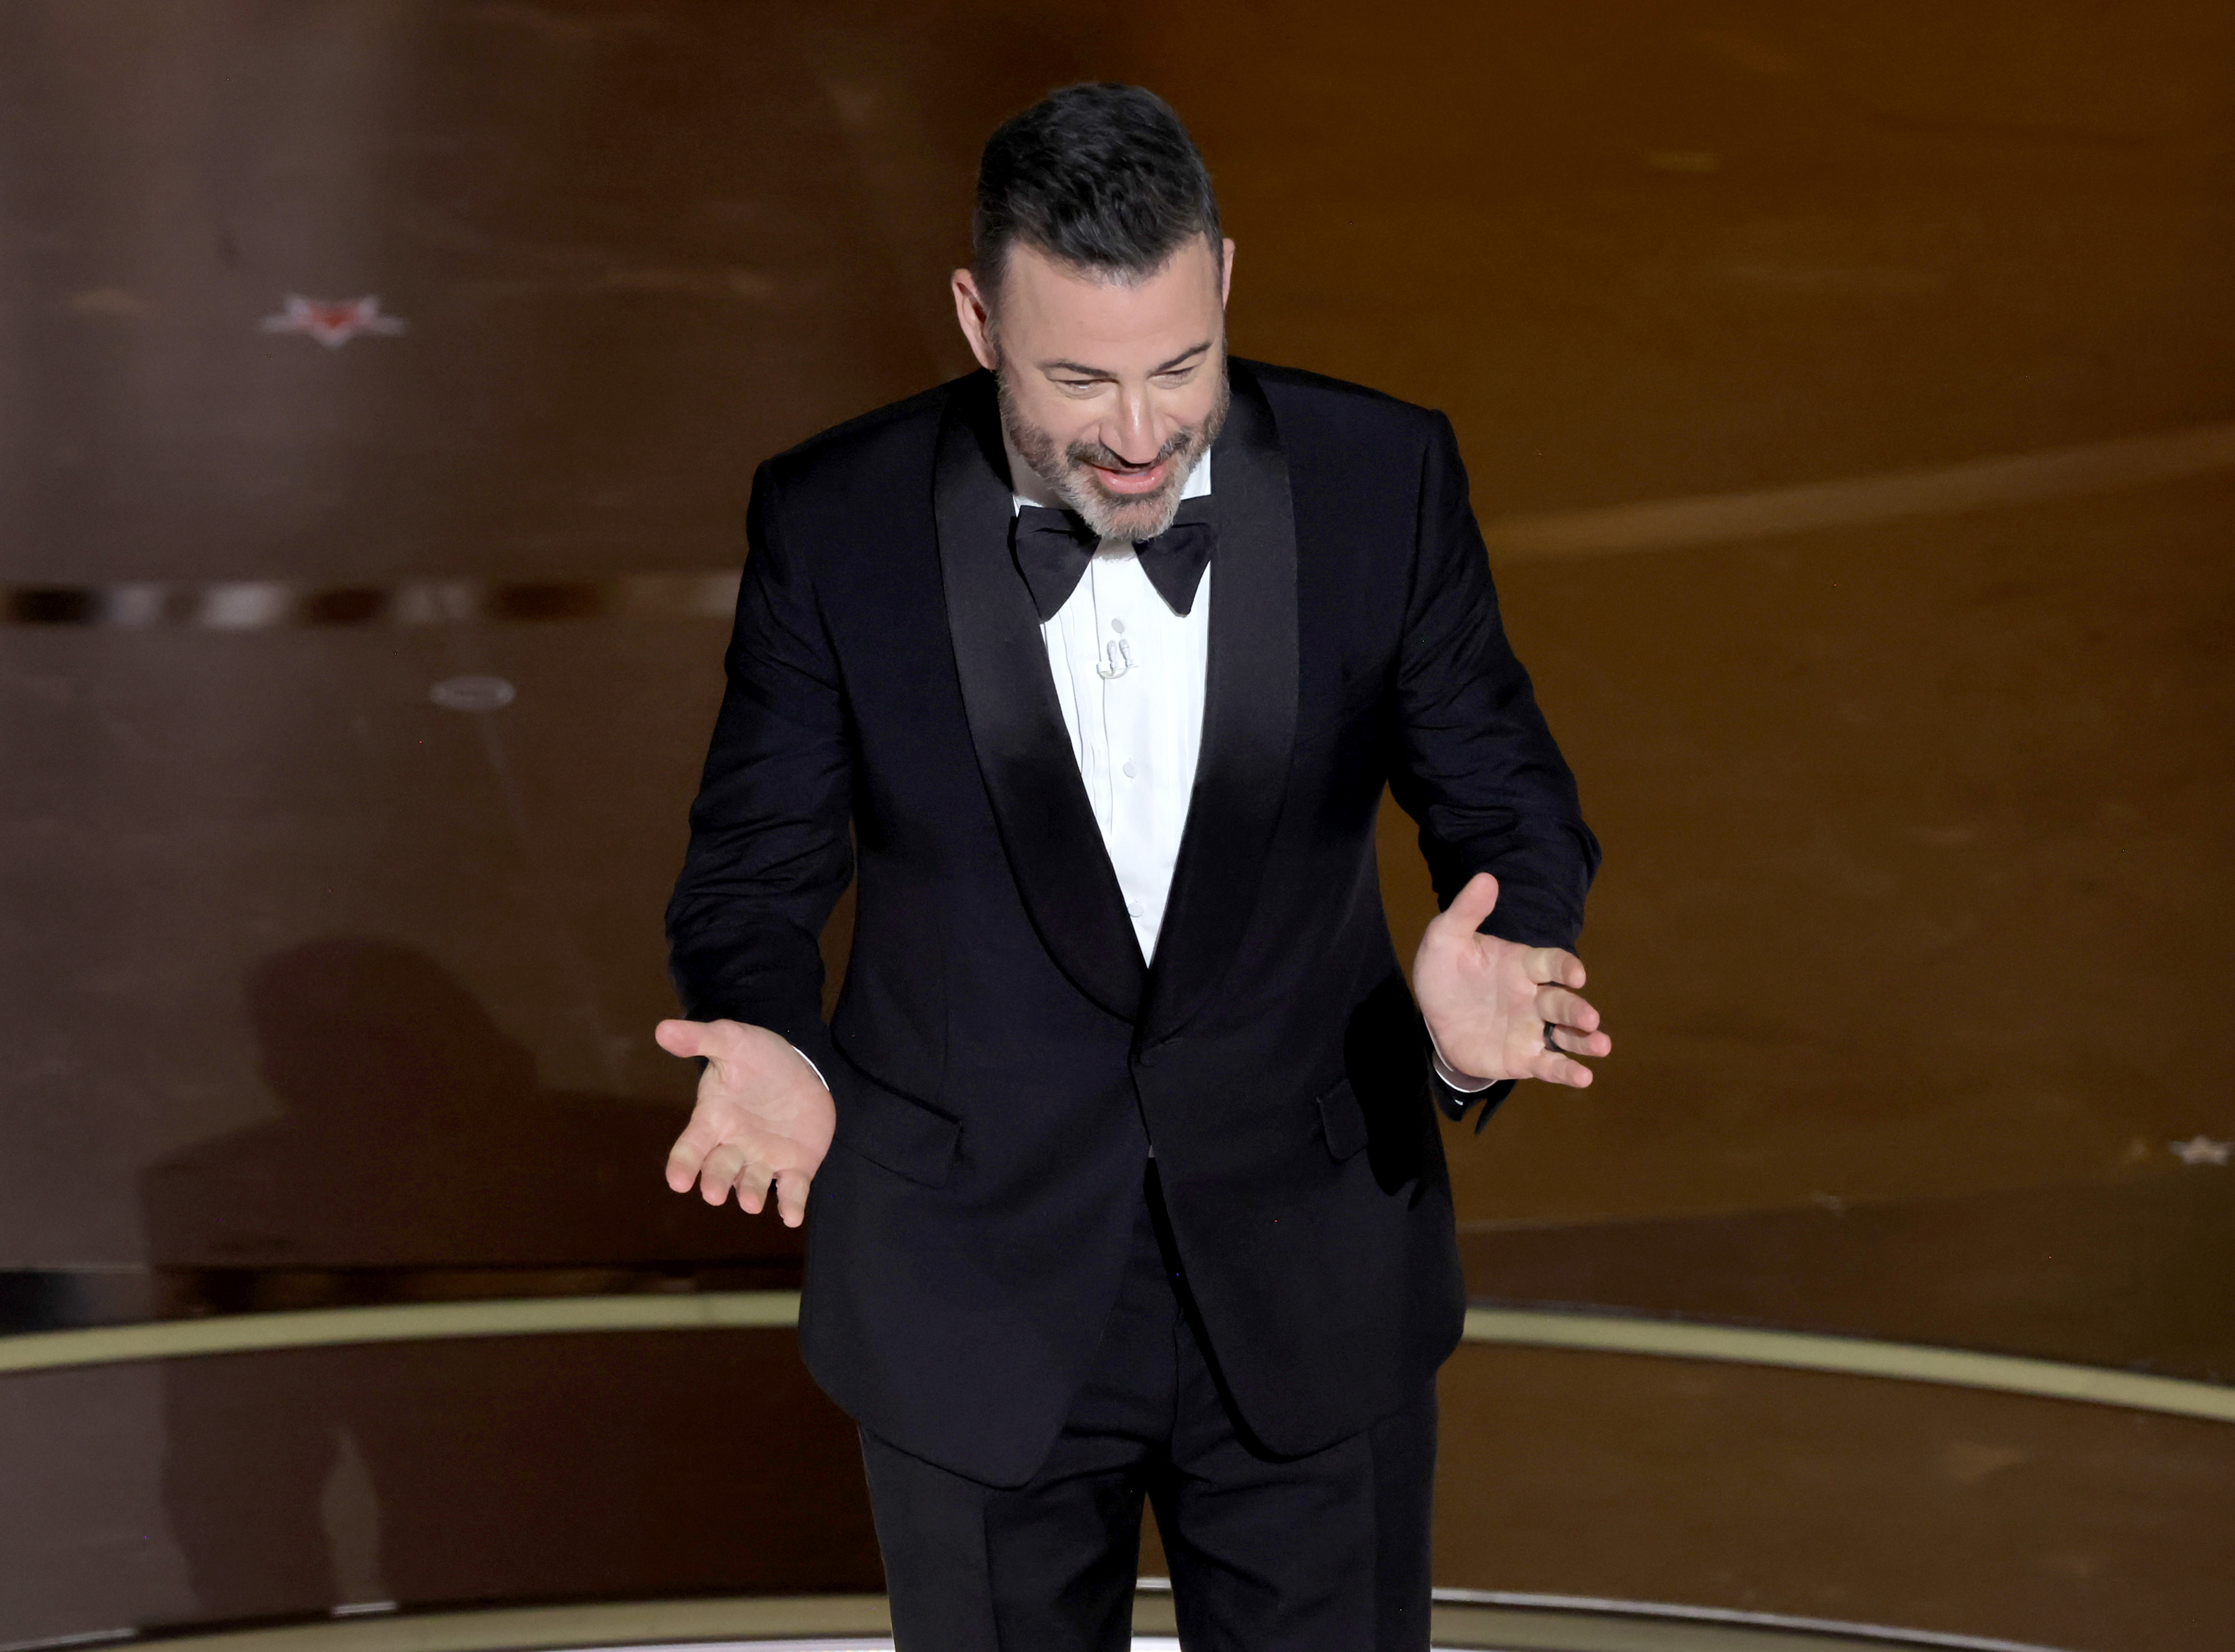 Jimmy Kimmel onstage